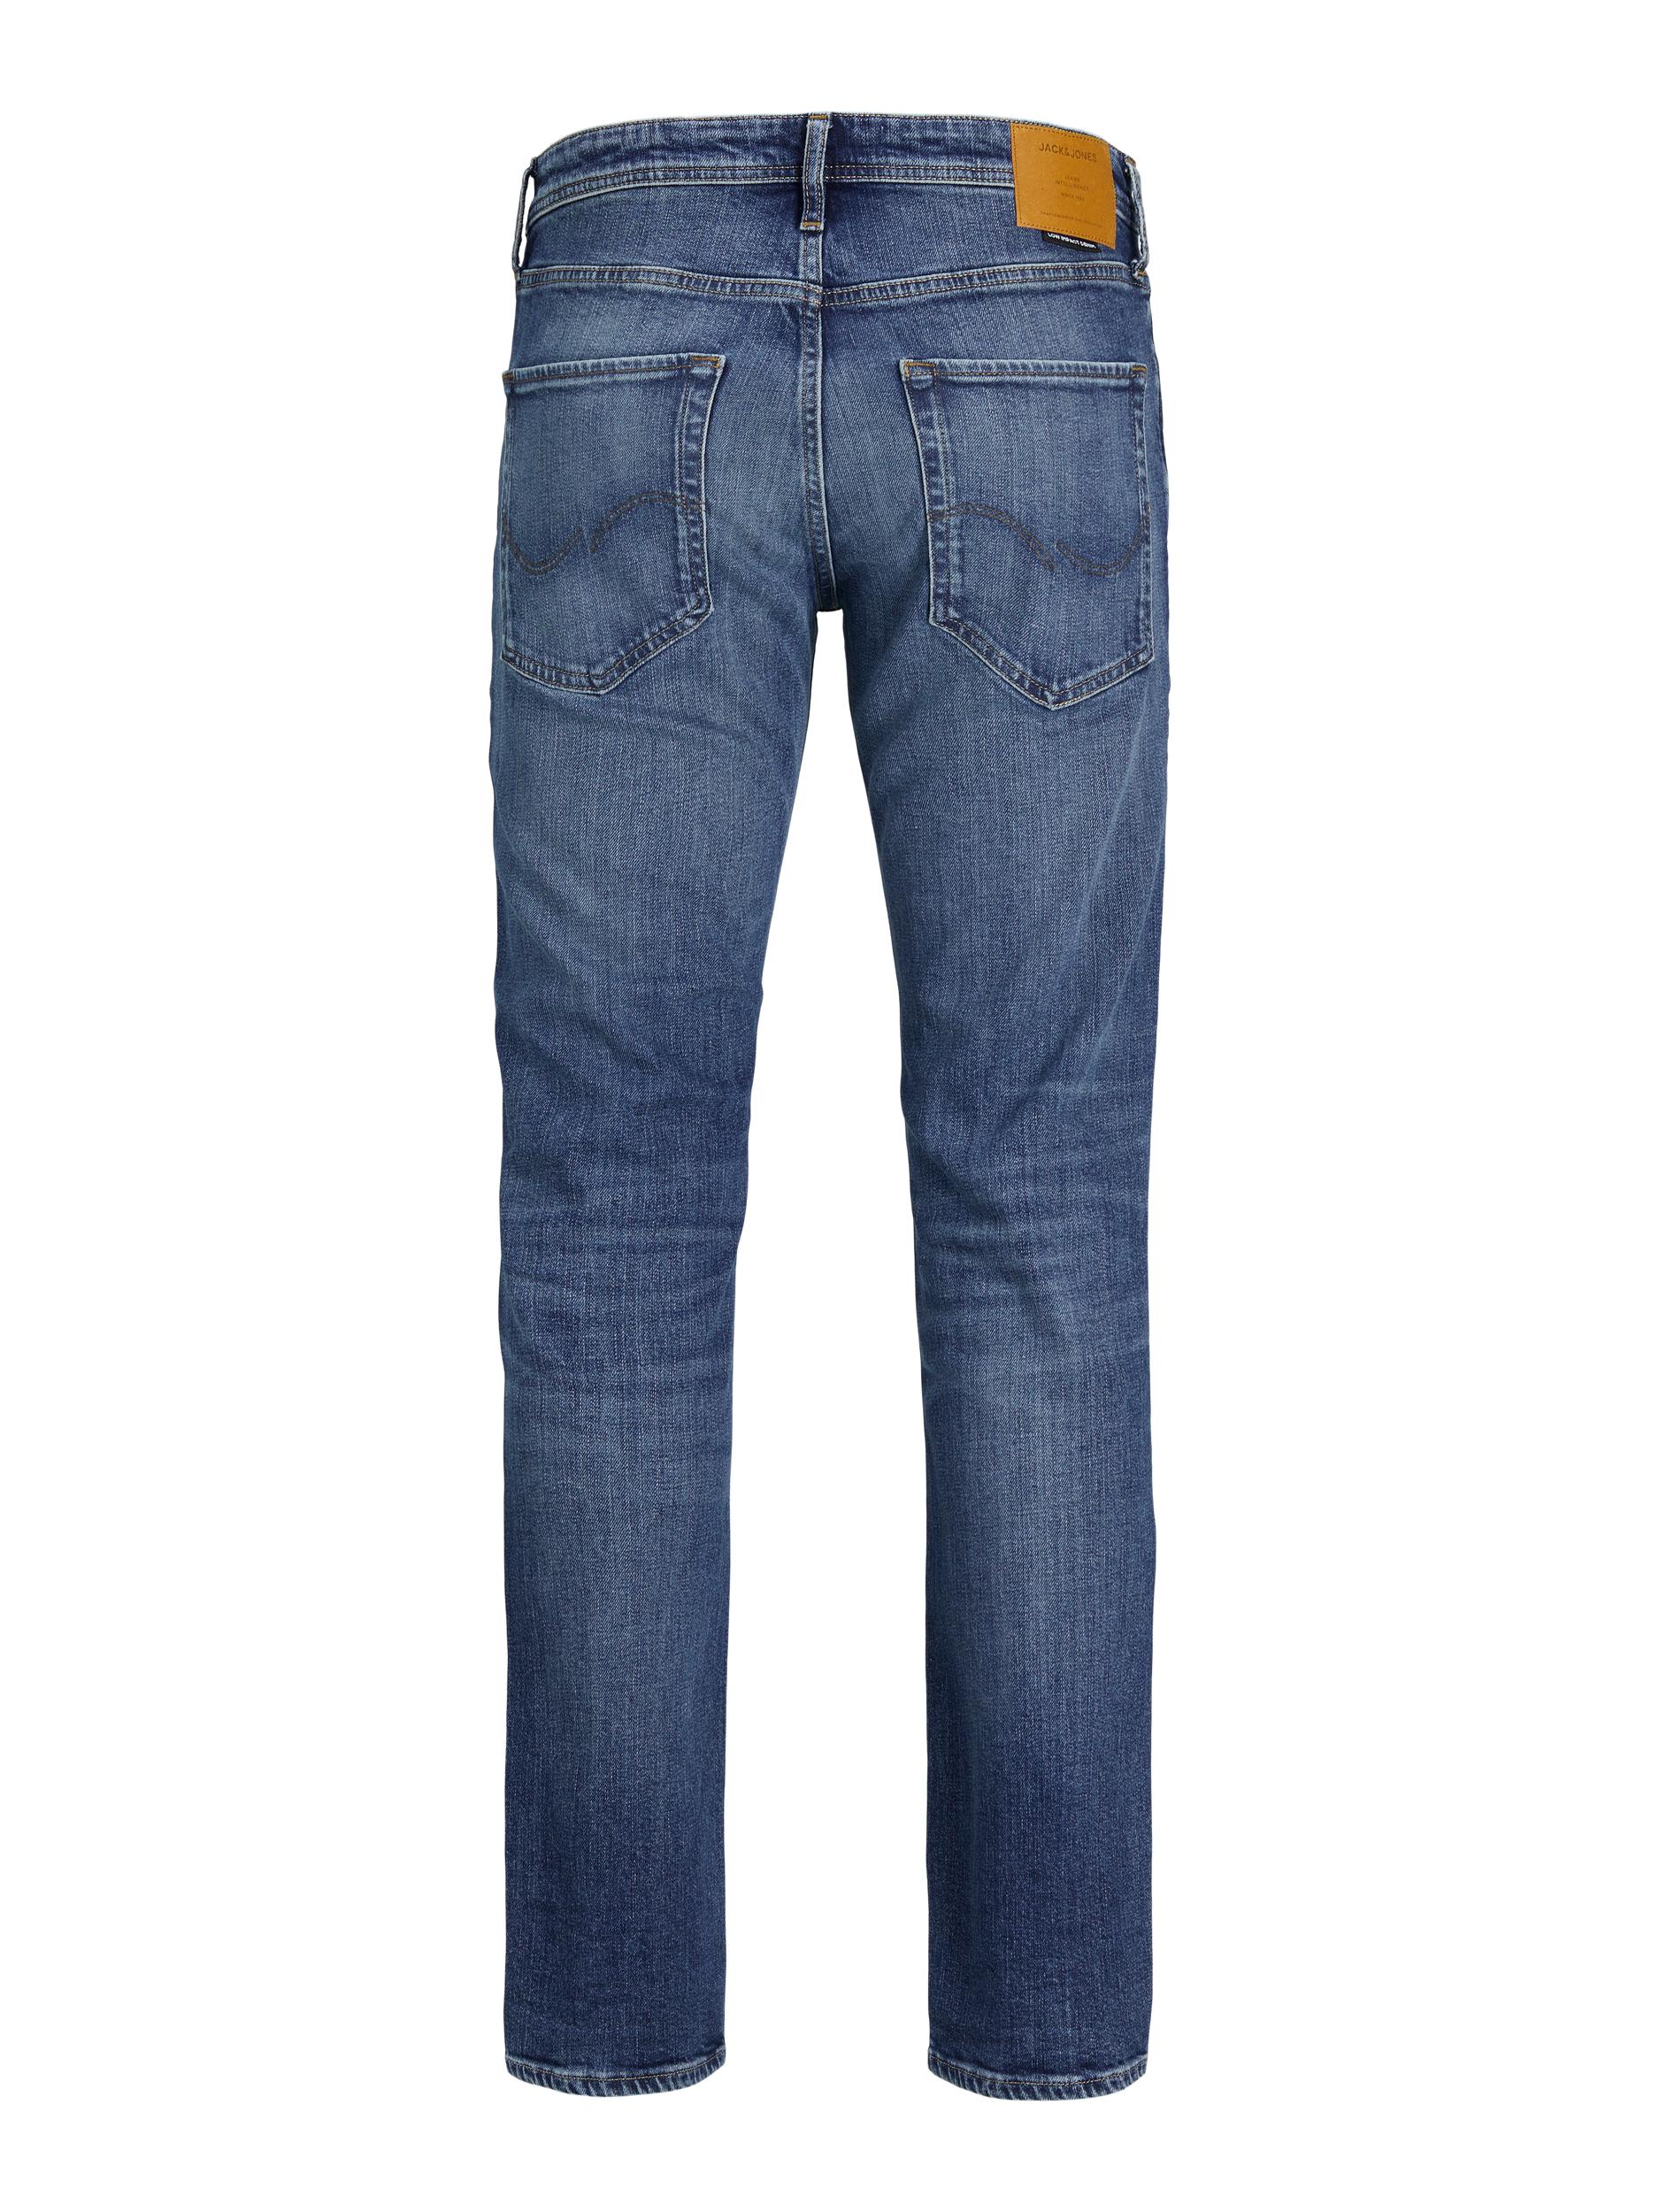 Clark Jeans, Blue Denim, W36/L32